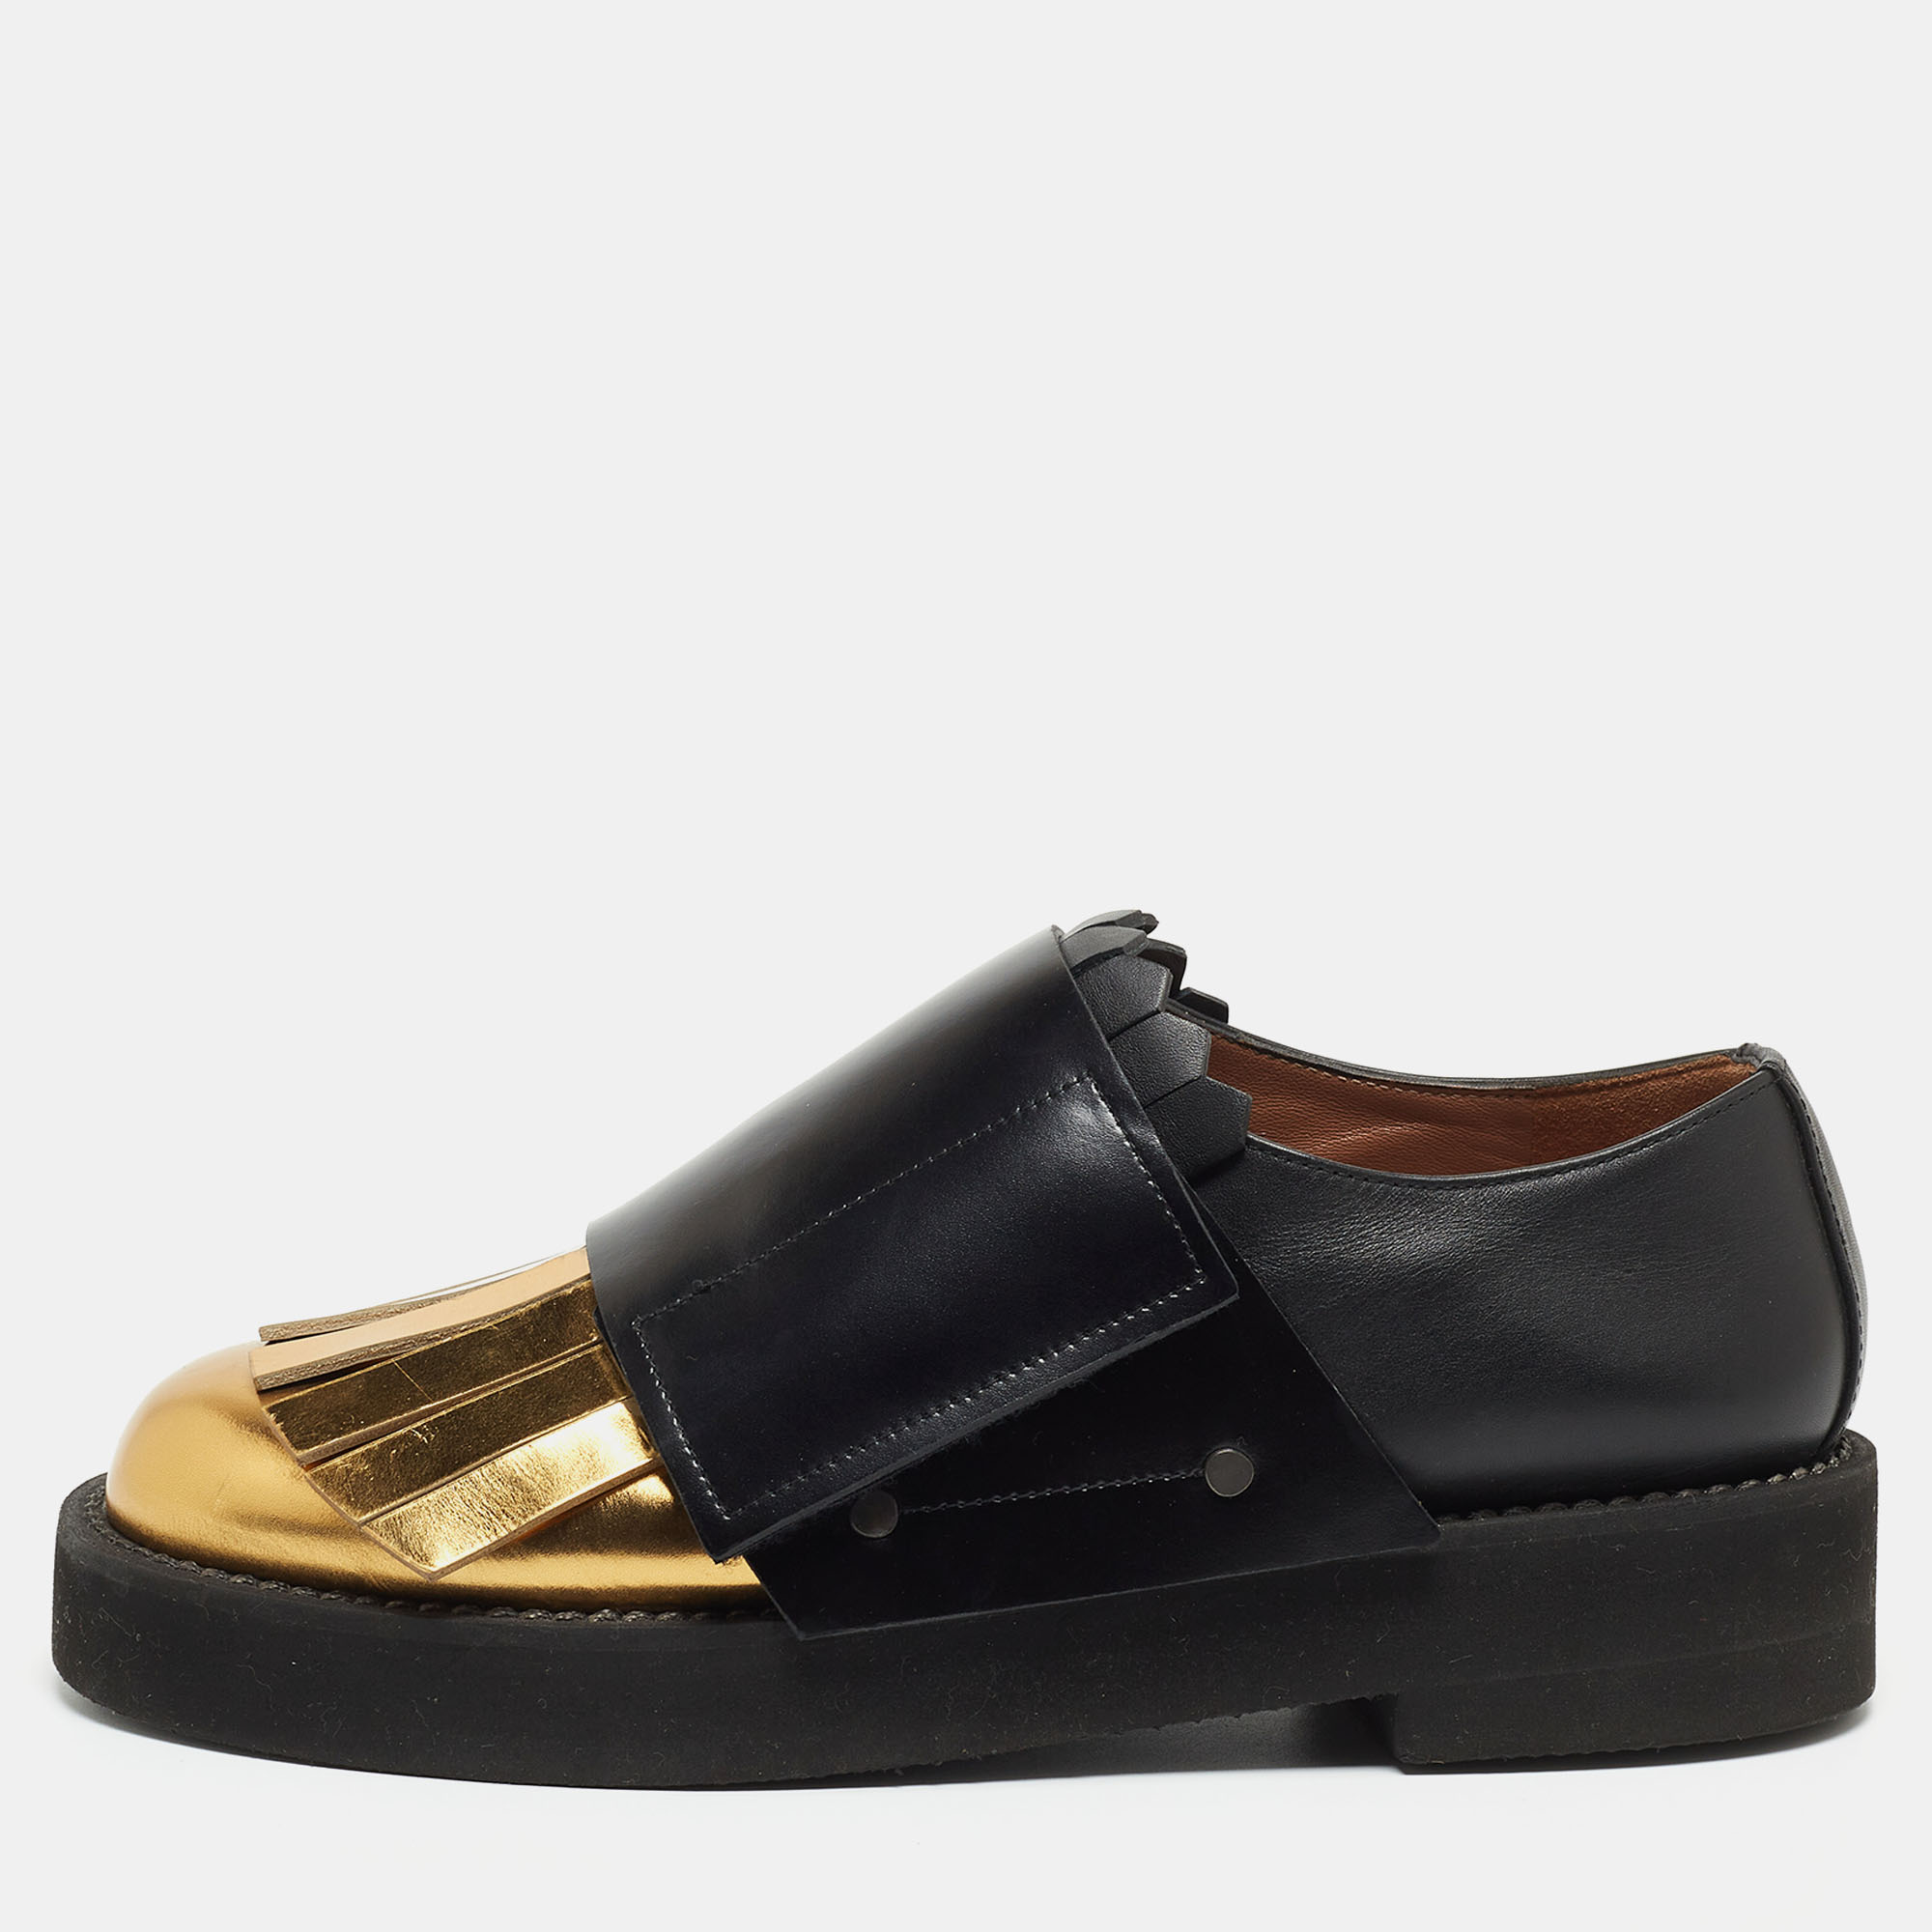 

Marni Black/Gold Leather Fringe Detail Slip On Loafers Size